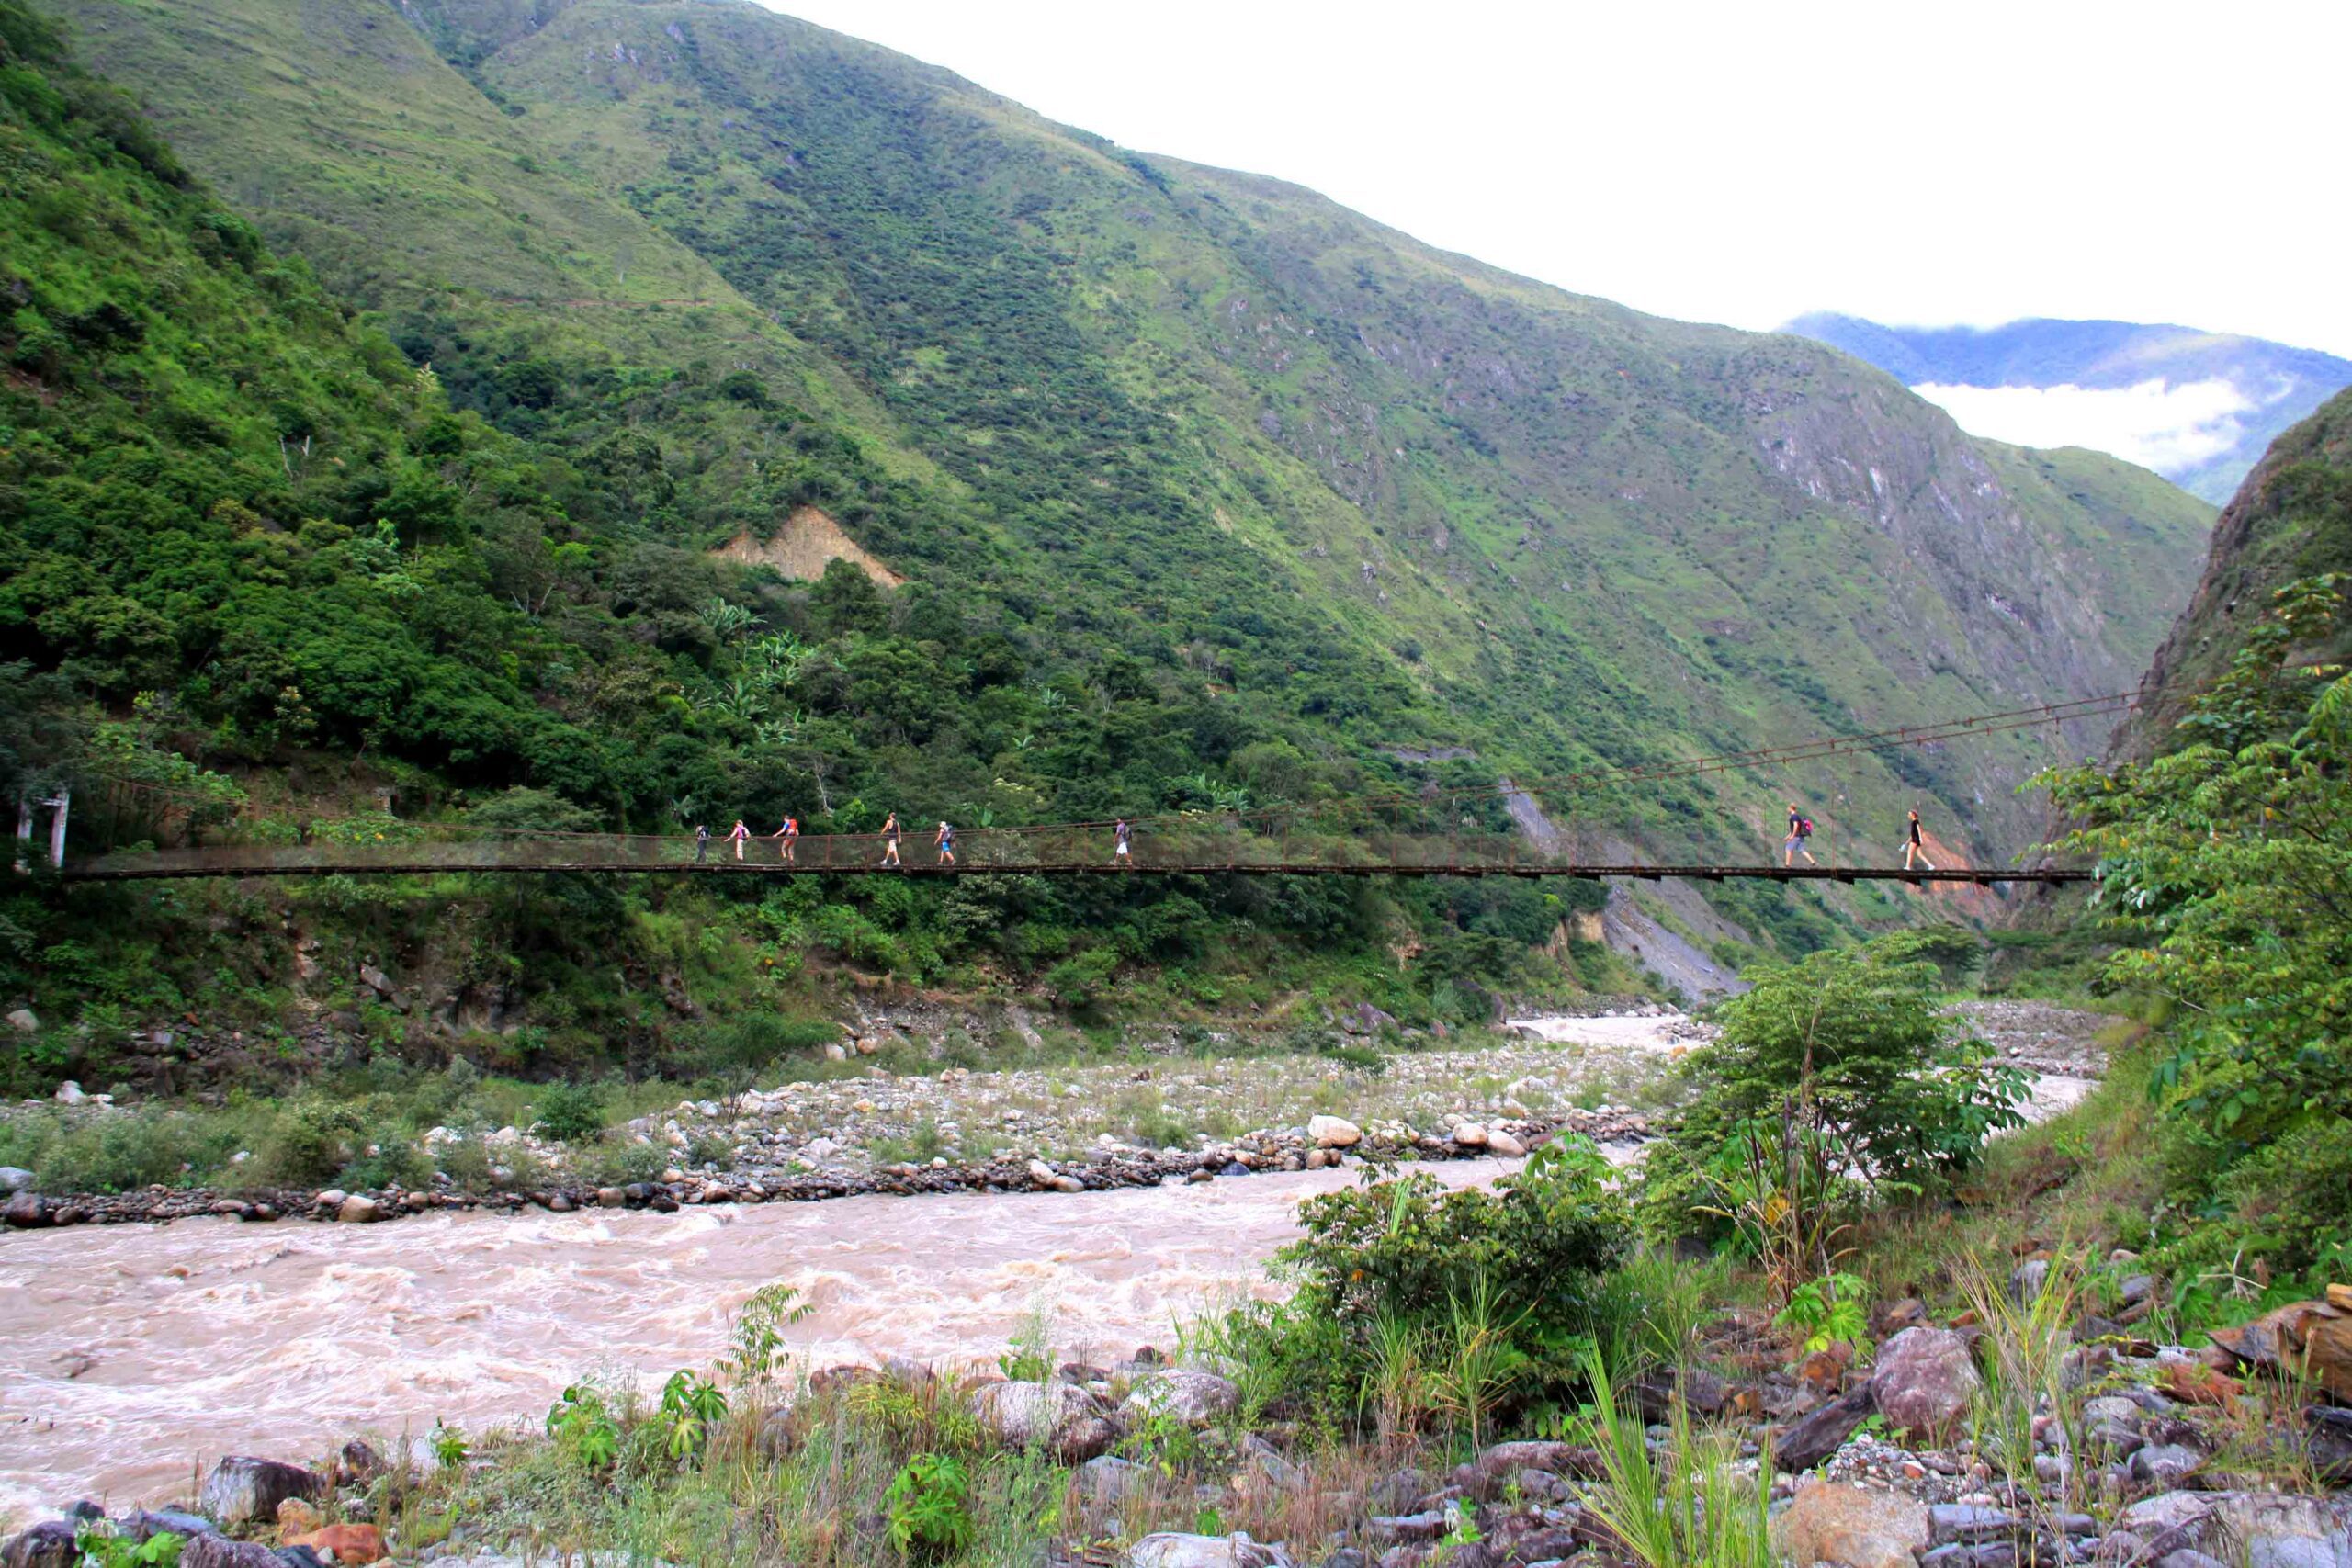 Inca Jungle Trail in Peru views